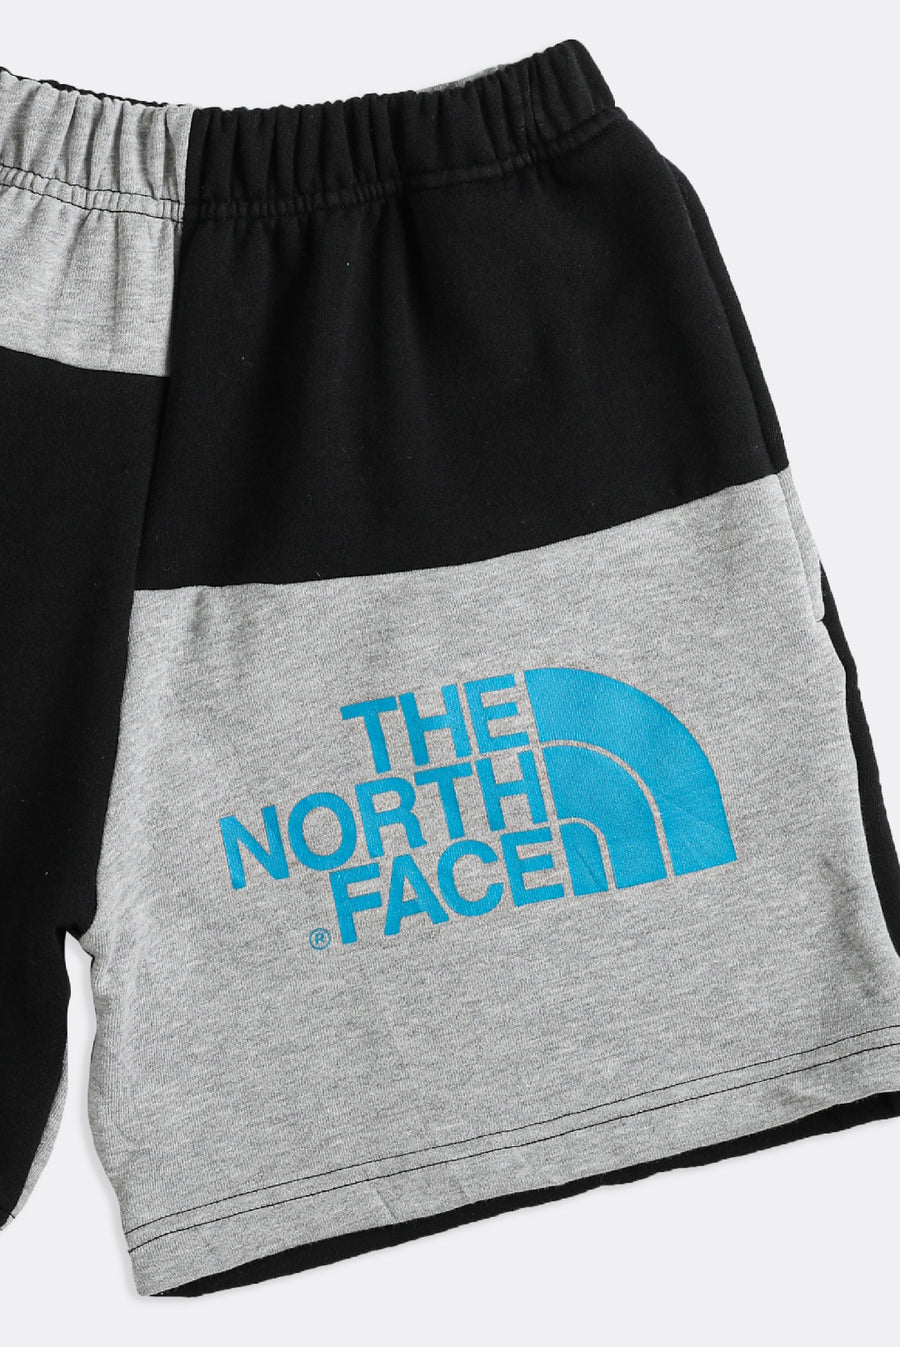 Rework North Face Patchwork Sweatshorts - XS